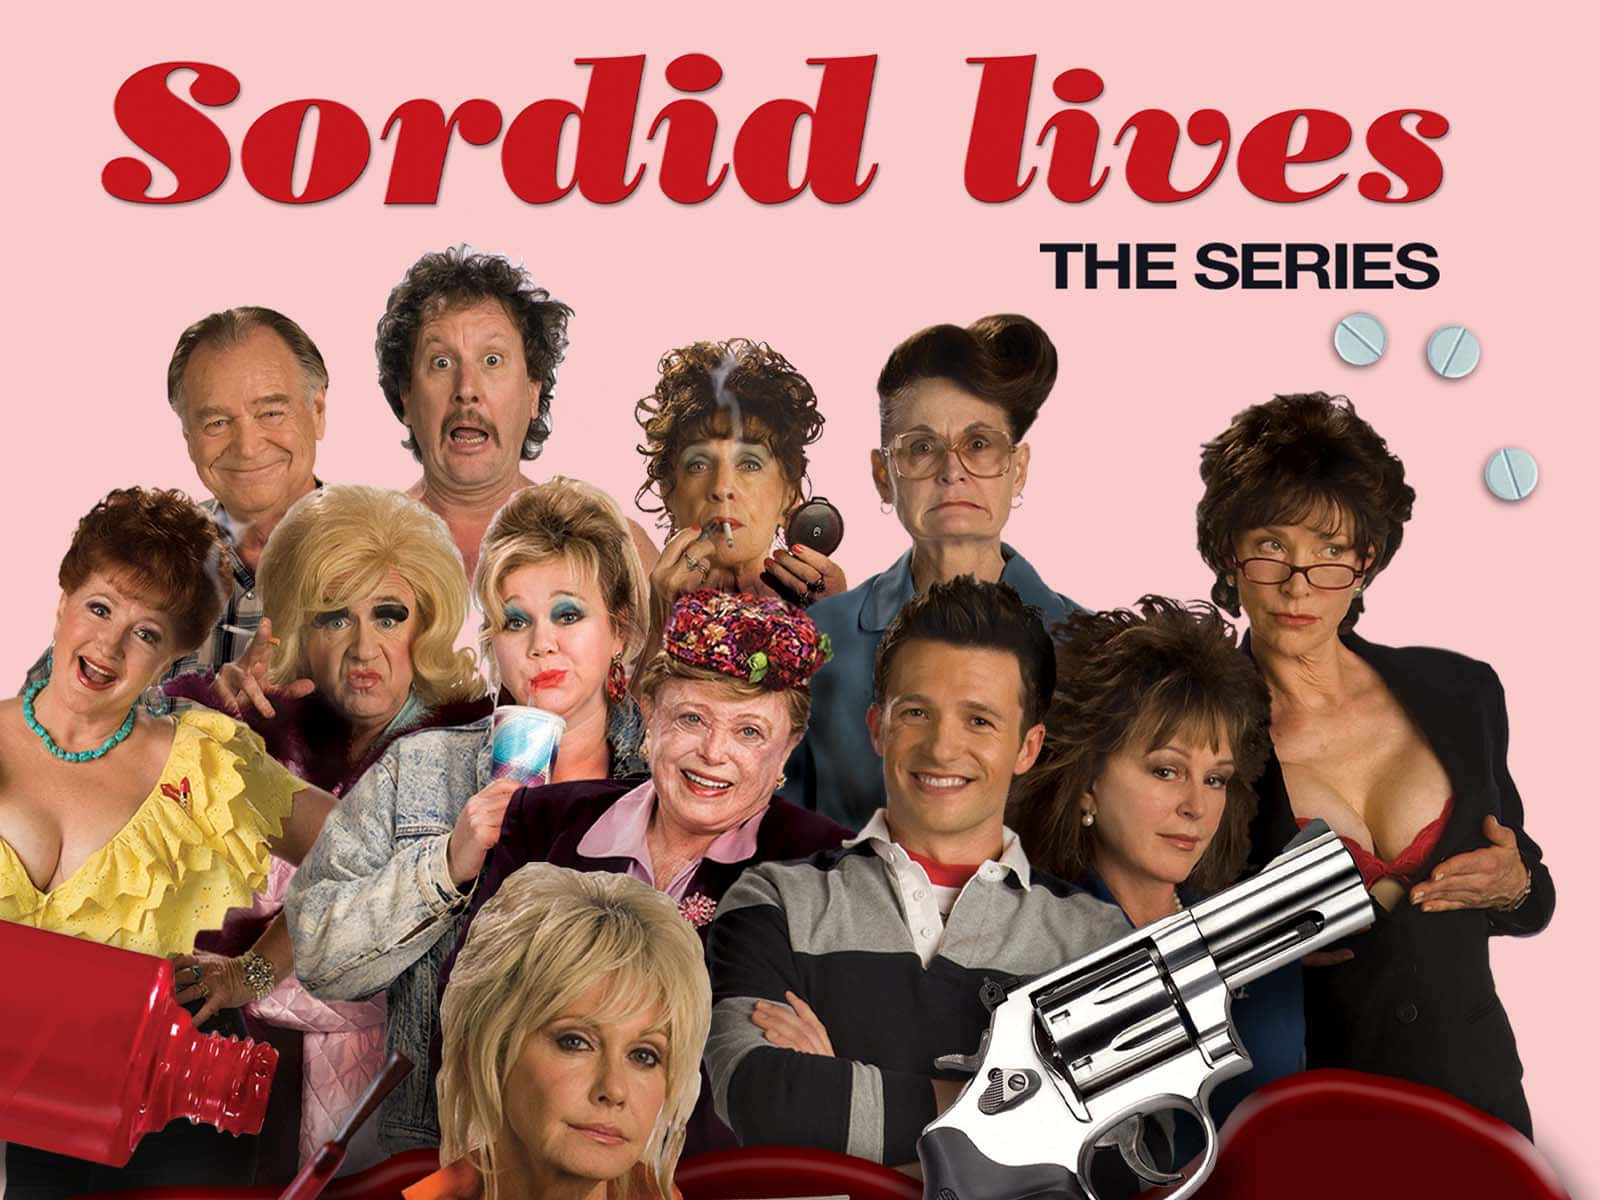 Sordid Lives Tv Series Wallpaper